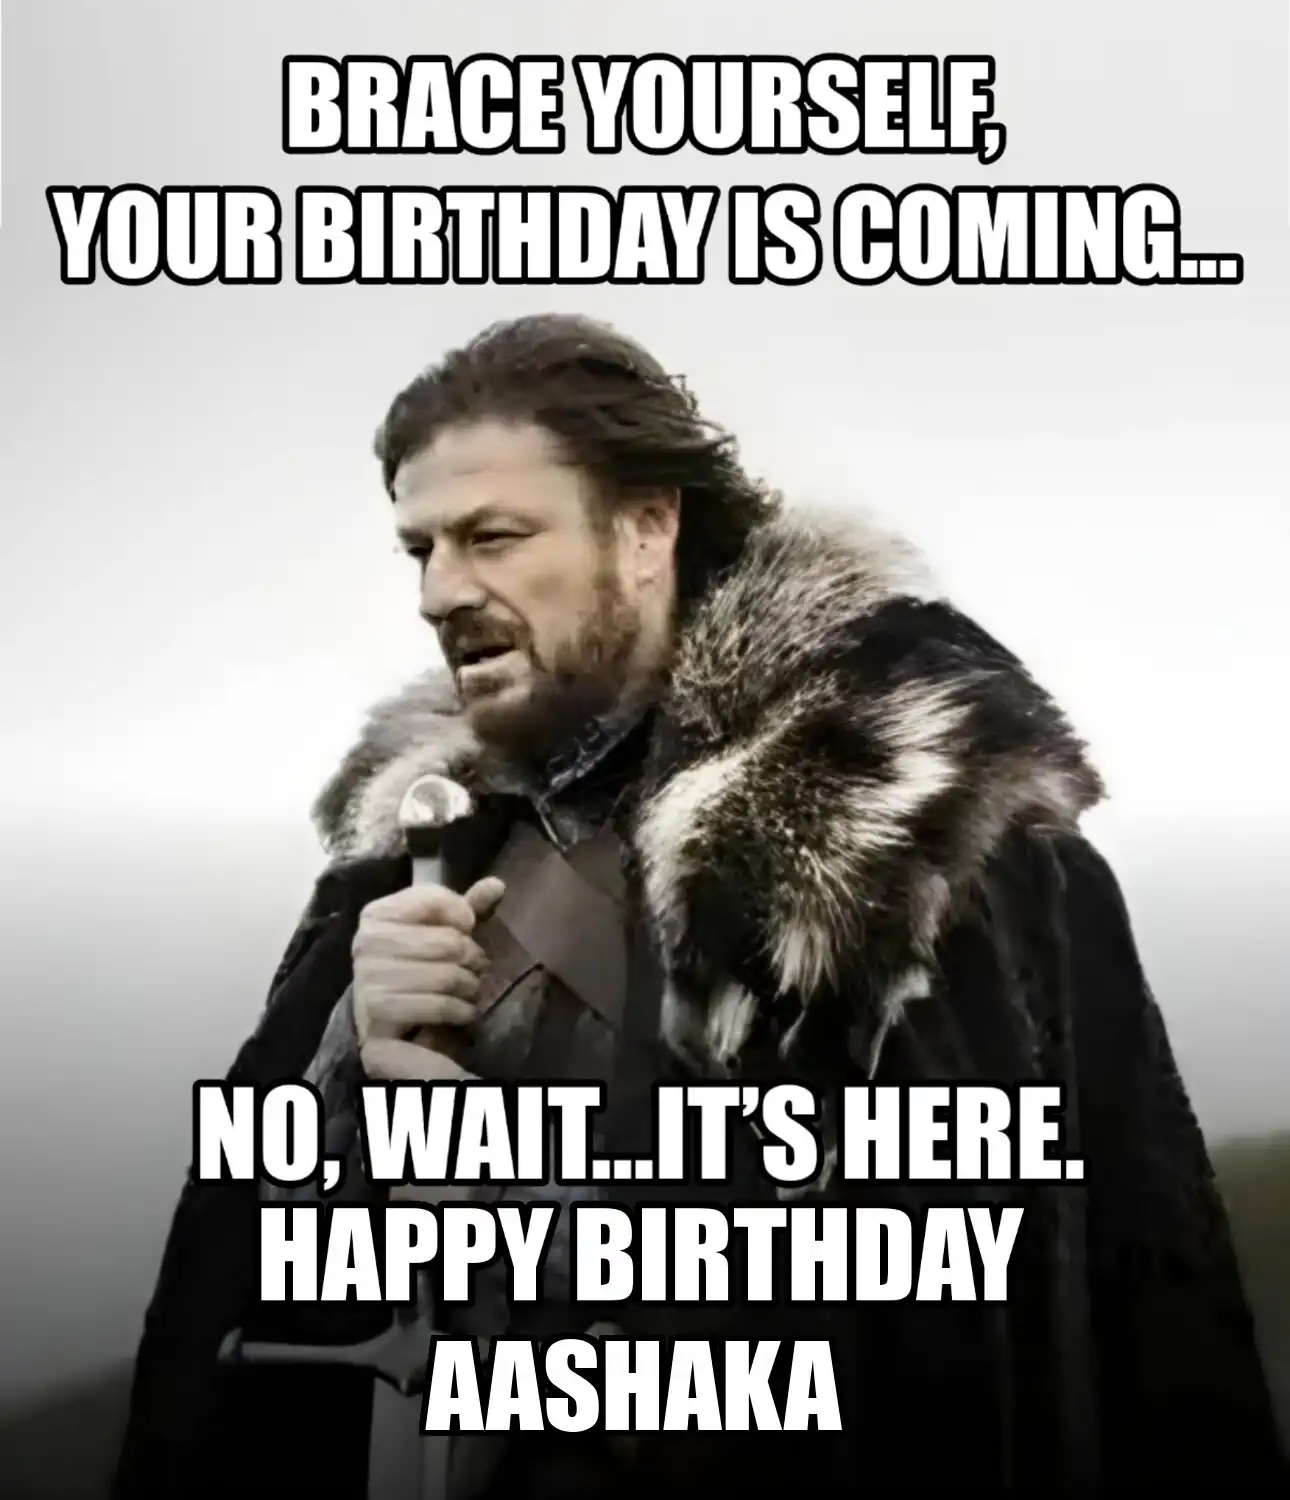 Happy Birthday Aashaka Brace Yourself Your Birthday Is Coming Meme